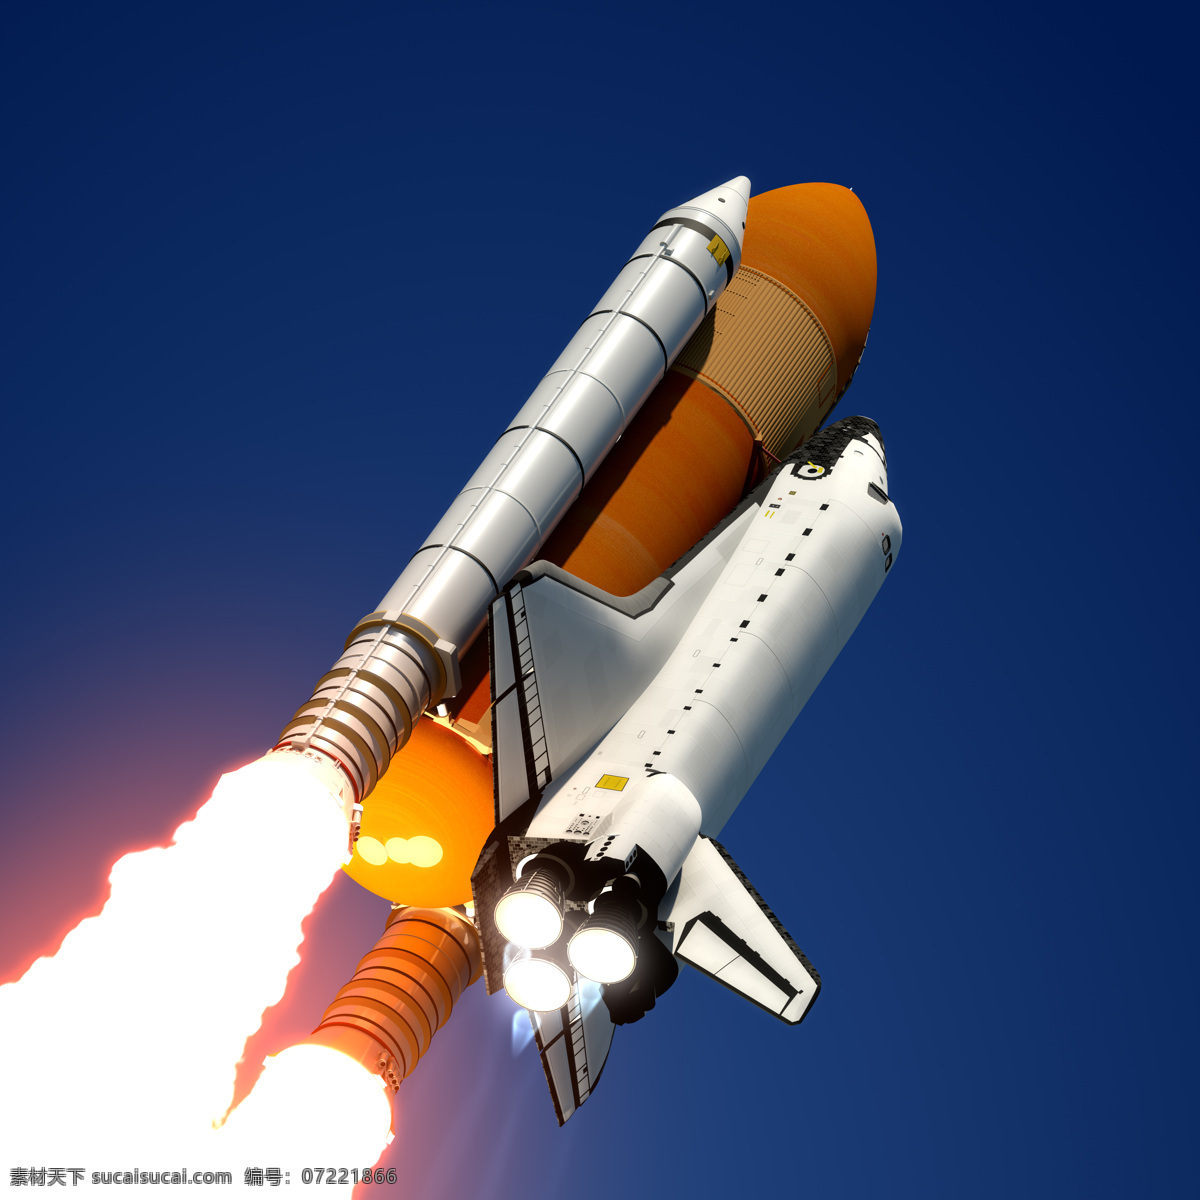 航天飞机 航空火箭 太空 探索 宇宙 航天科技 科学研究 现代科技